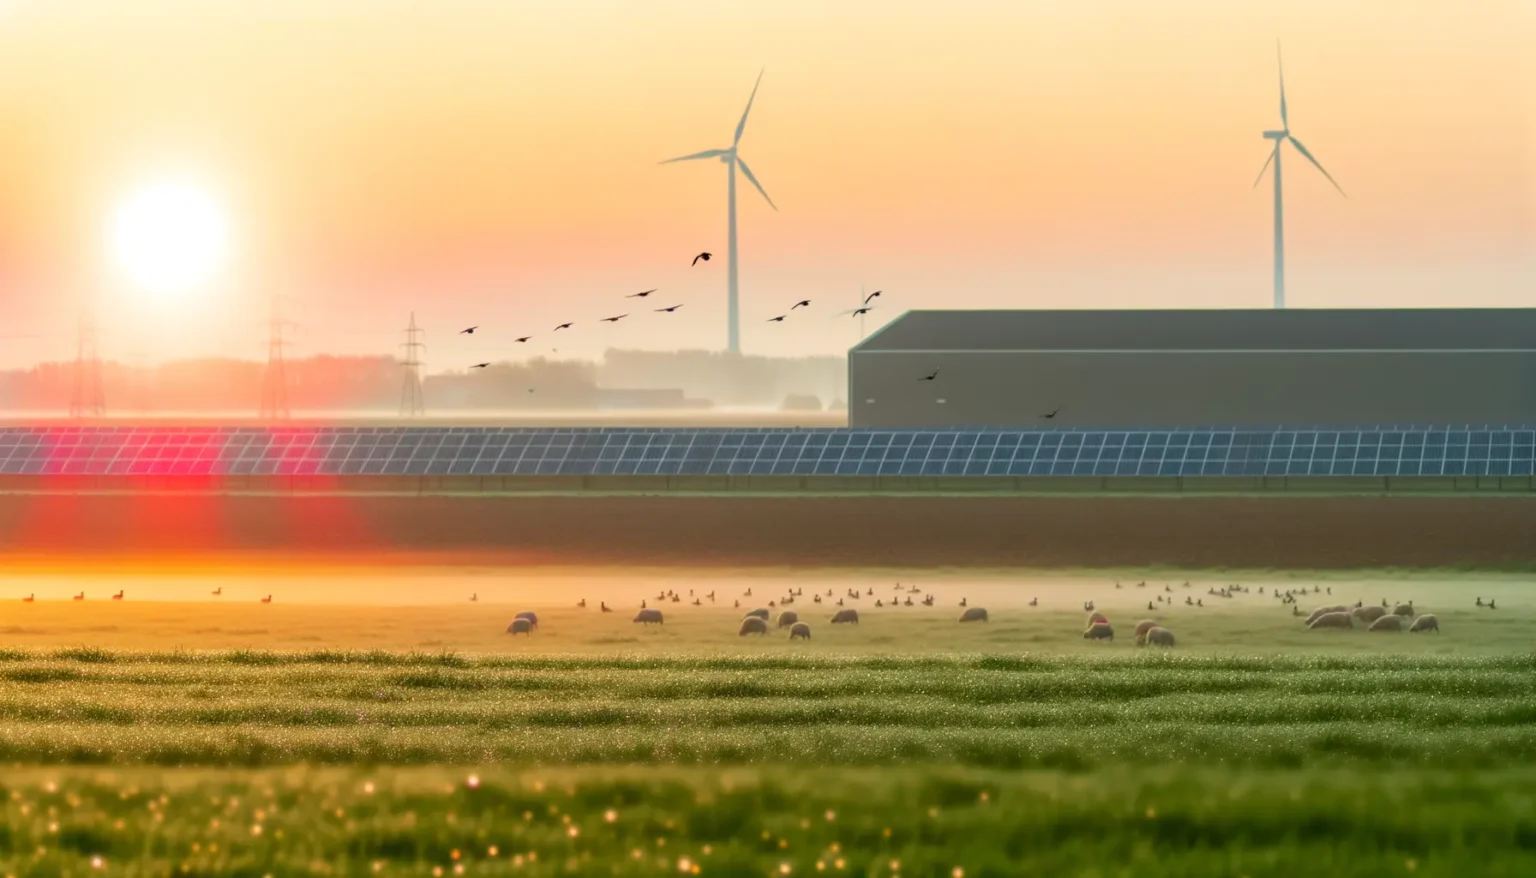 Ein Sonnenaufgang über einer ländlichen Landschaft mit Windturbinen und Solarmodulen im Hintergrund. Im Vordergrund weiden Schafe auf einem Feld, das von Morgentau glitzert. Vögel fliegen am orangefarbenen Himmel, und Stromleitungen erstrecken sich entlang des Bildrandes.